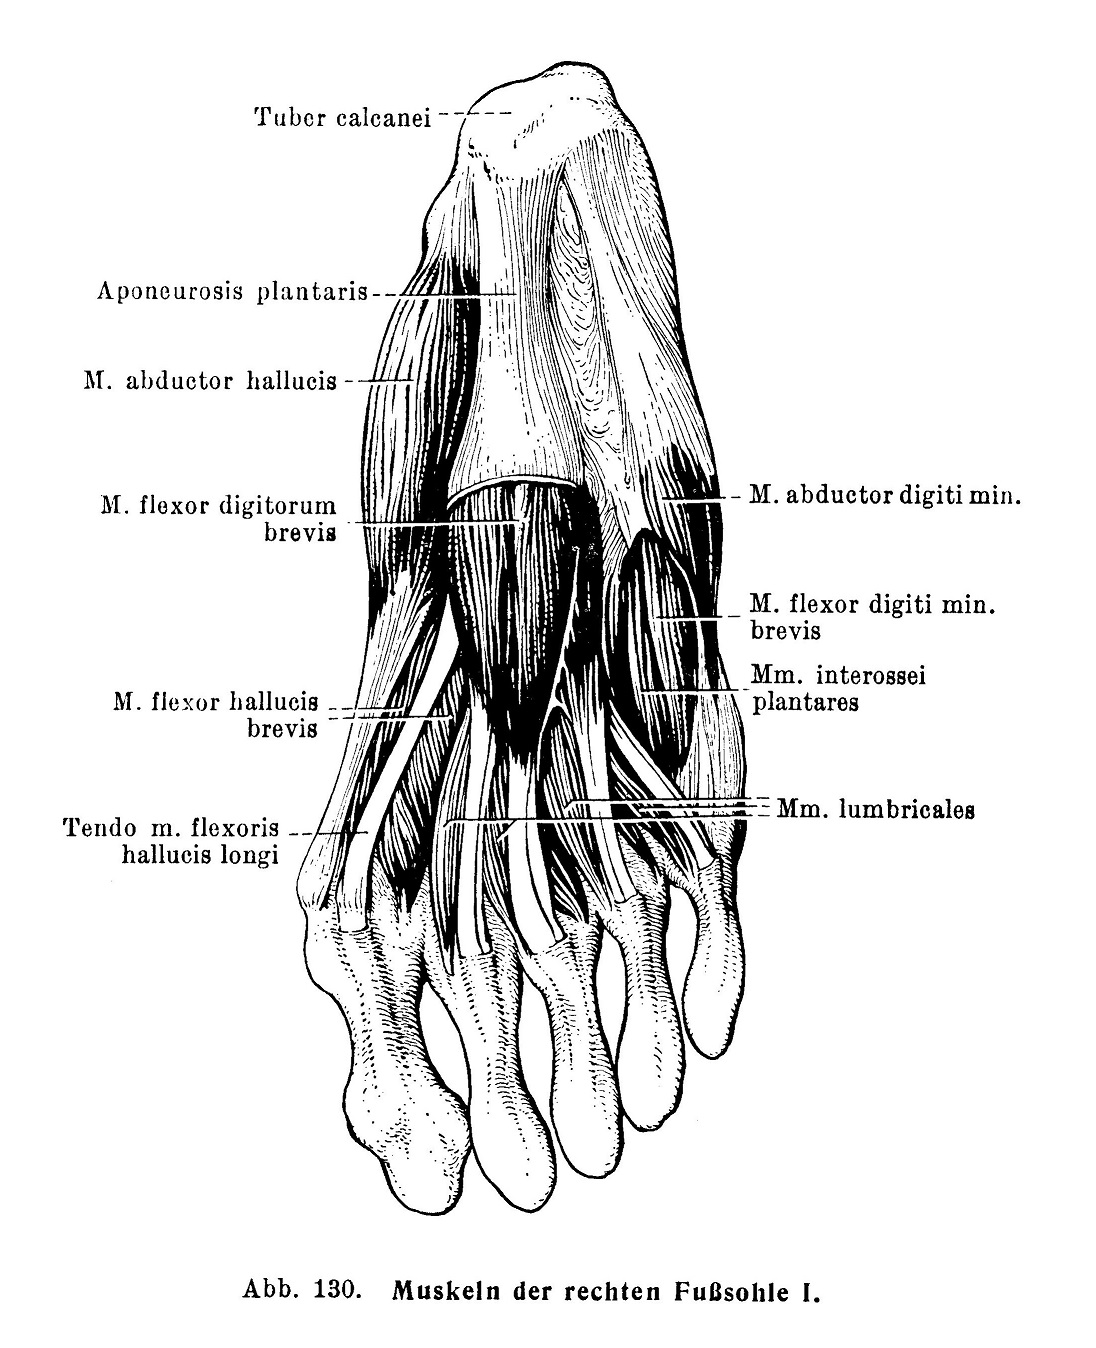 Muskeln der rechten Fußsohle I